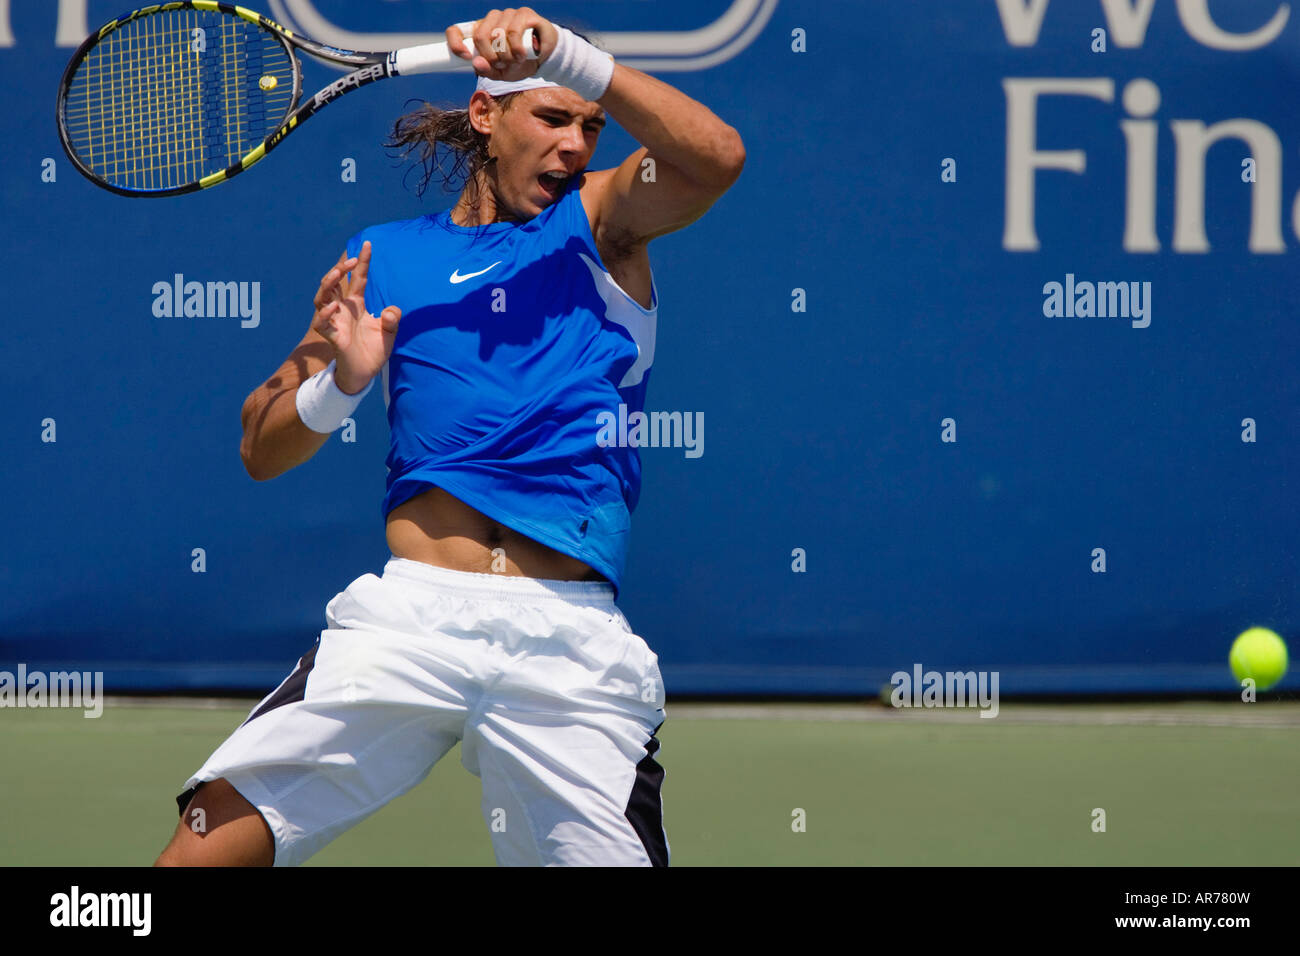 Rafael Nadal uno de los jugadores de tenis ATP superior en acción en el ATP de Cincinnati en preparación para el US Open. Foto de stock